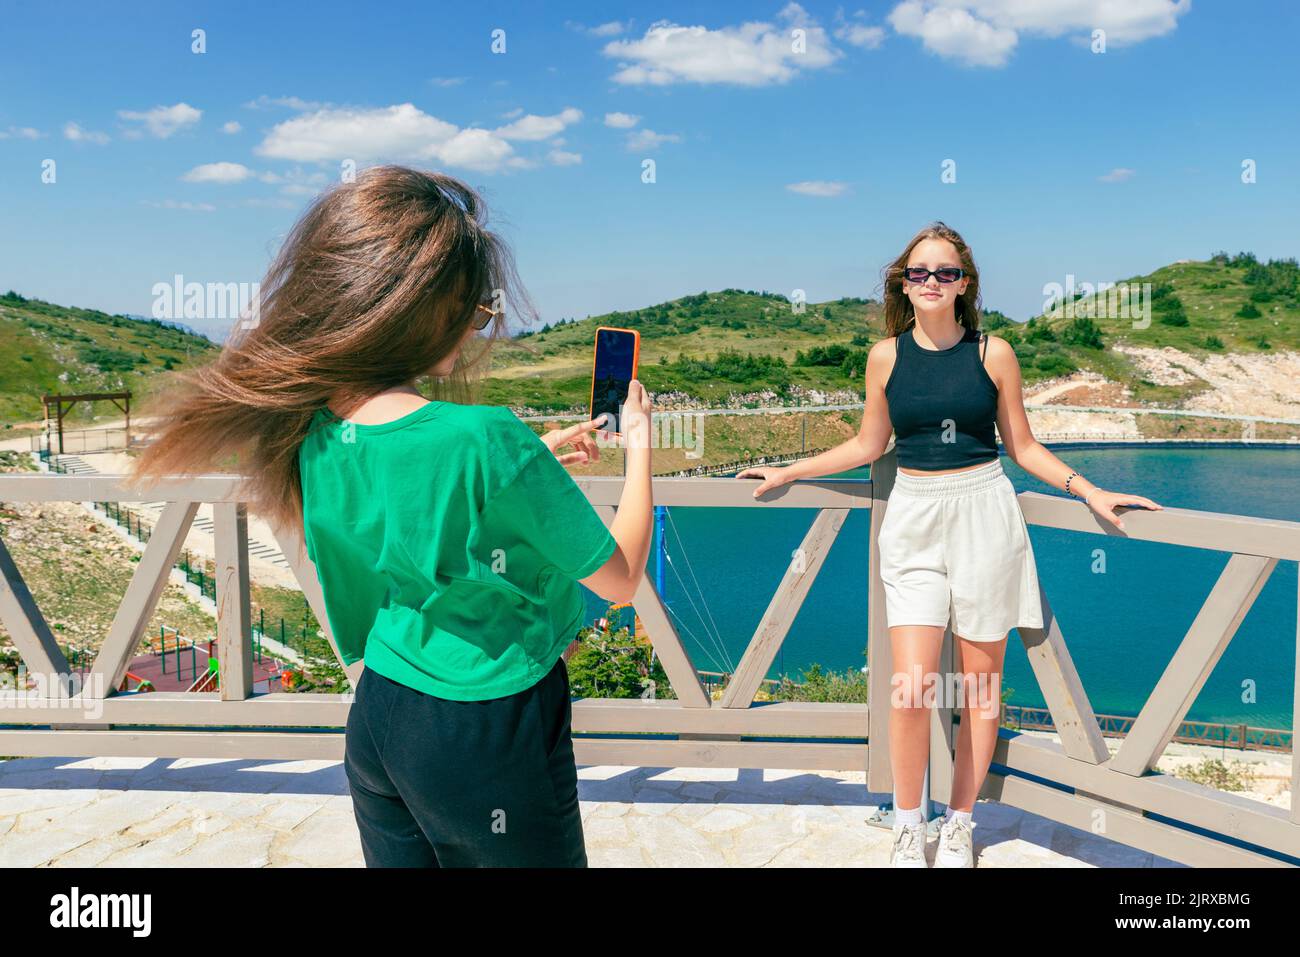 Une jeune fille prend une photo de son ami en face du lac avec un téléphone portable. Le concept des influenceurs de voyages. Montagne en arrière-plan Banque D'Images